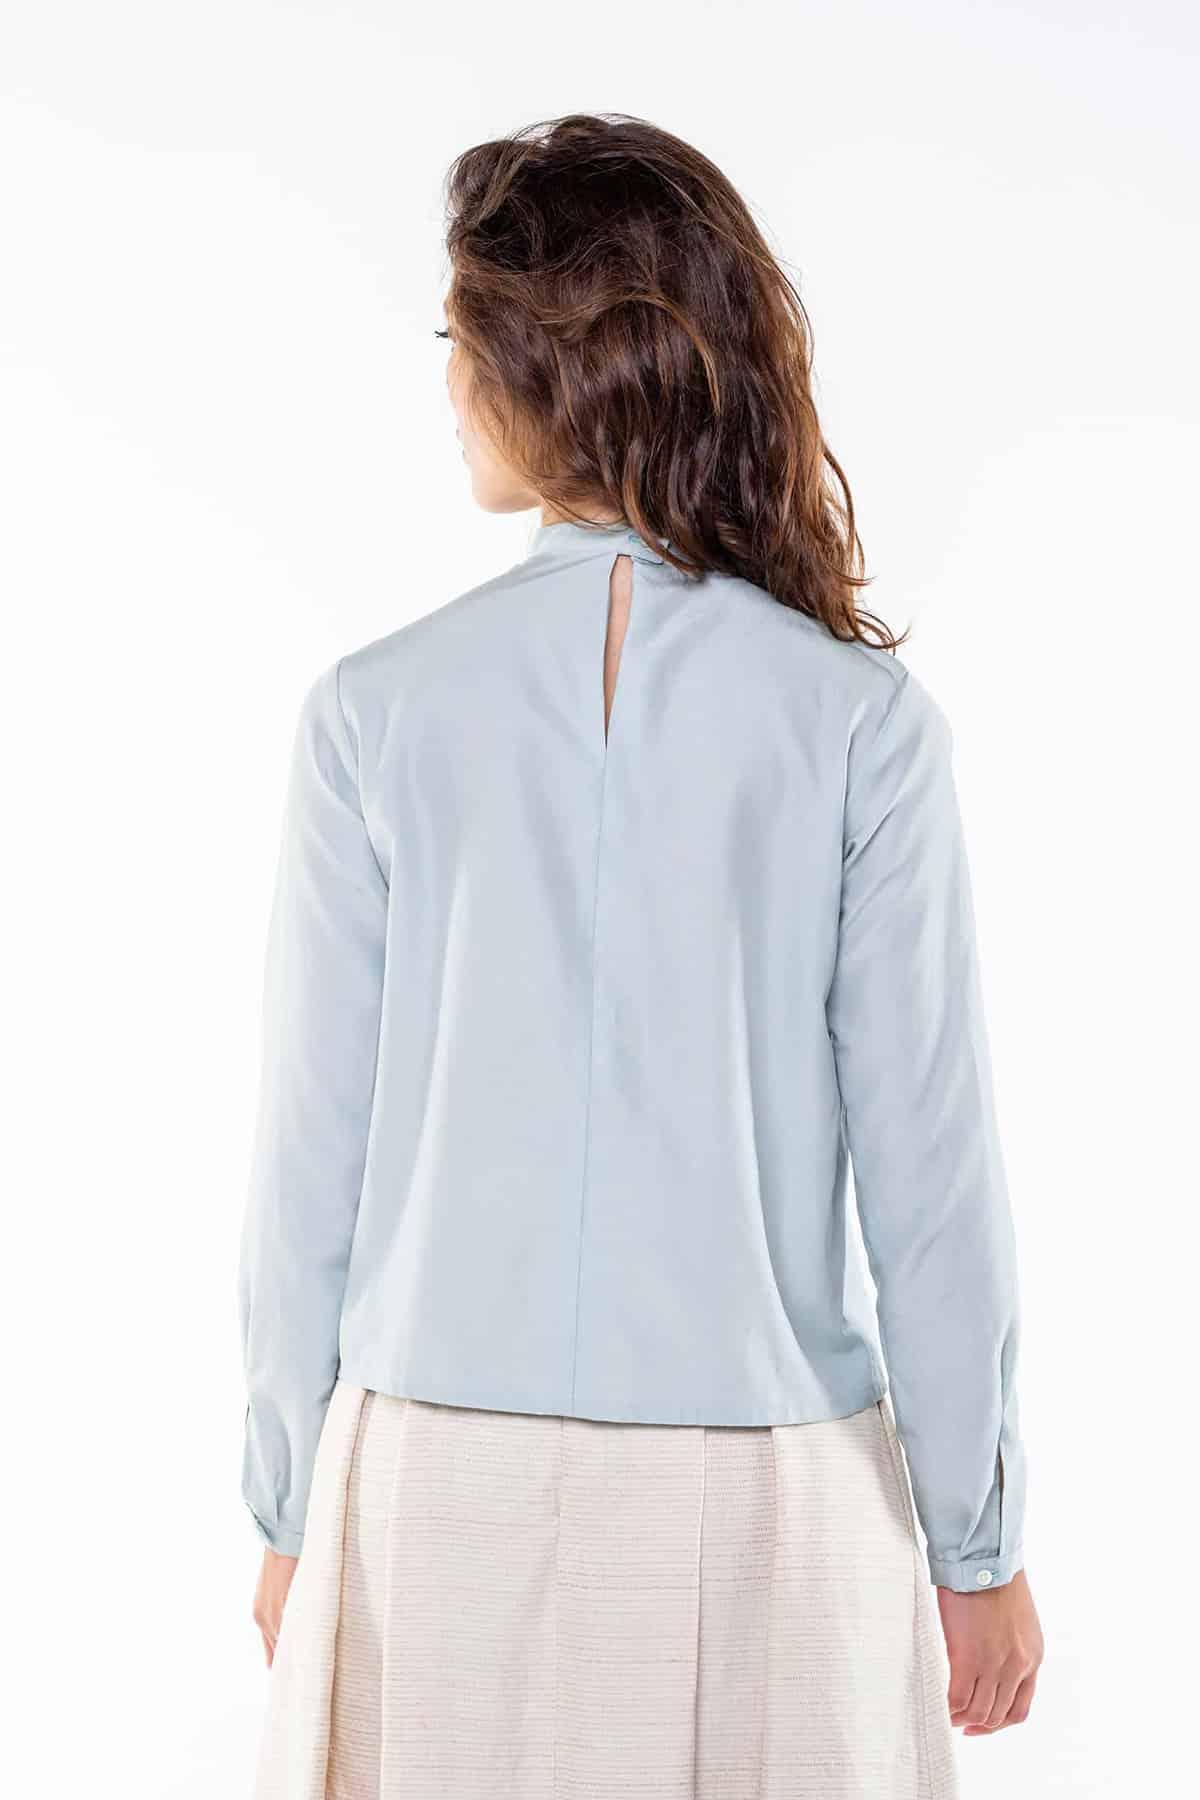 Camicia SVEVA Cupro grs ecologico Cotone Biologico Moda Sostenibile Artigianale brand Malia Lab camicia sartoriale blusa su misura dettaglio posteriore